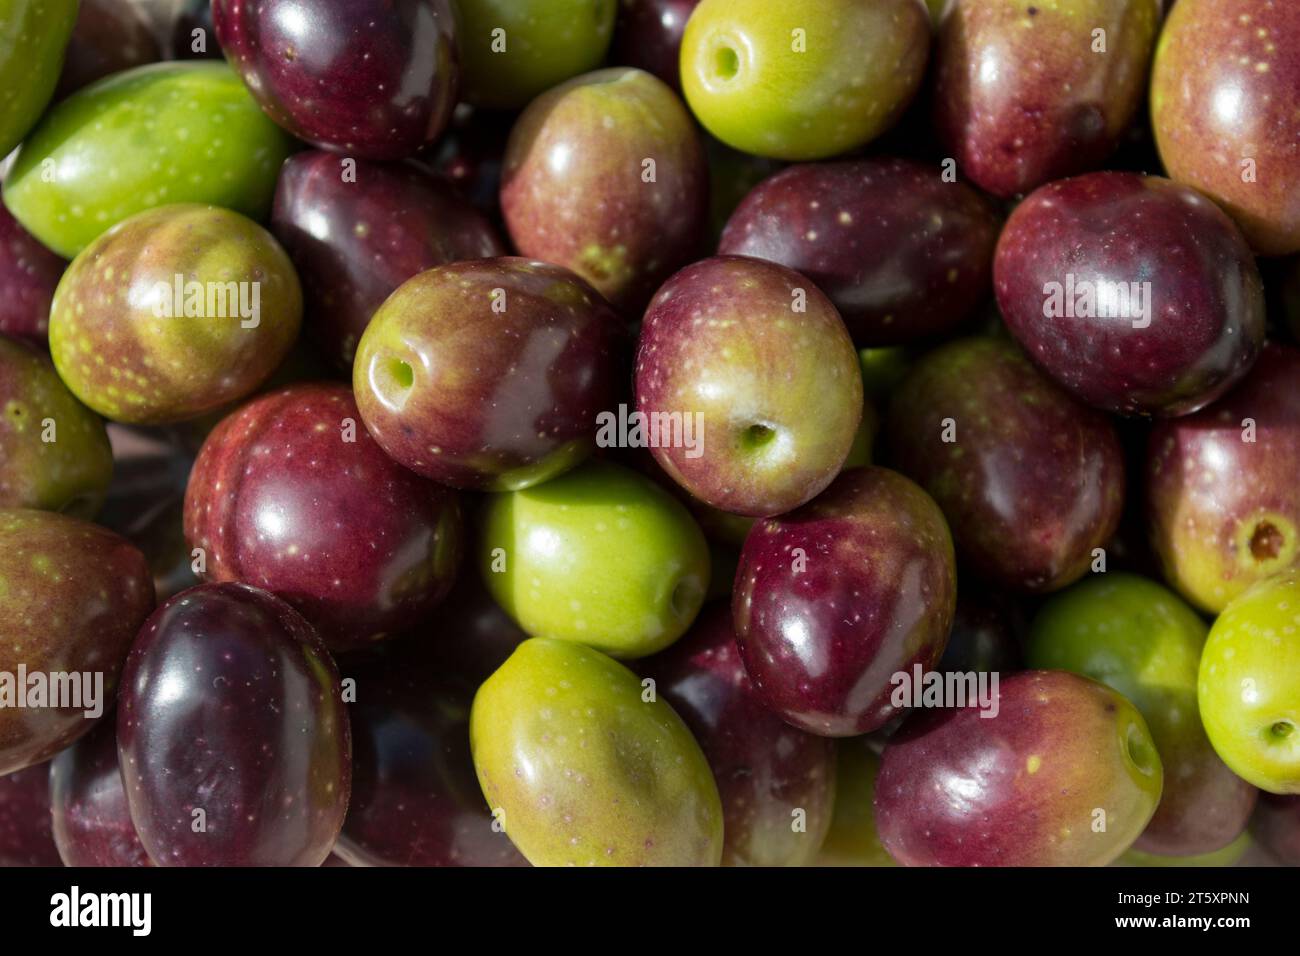 Aceitunas picual fuente de aceite de oliva virgen extra Foto Stock